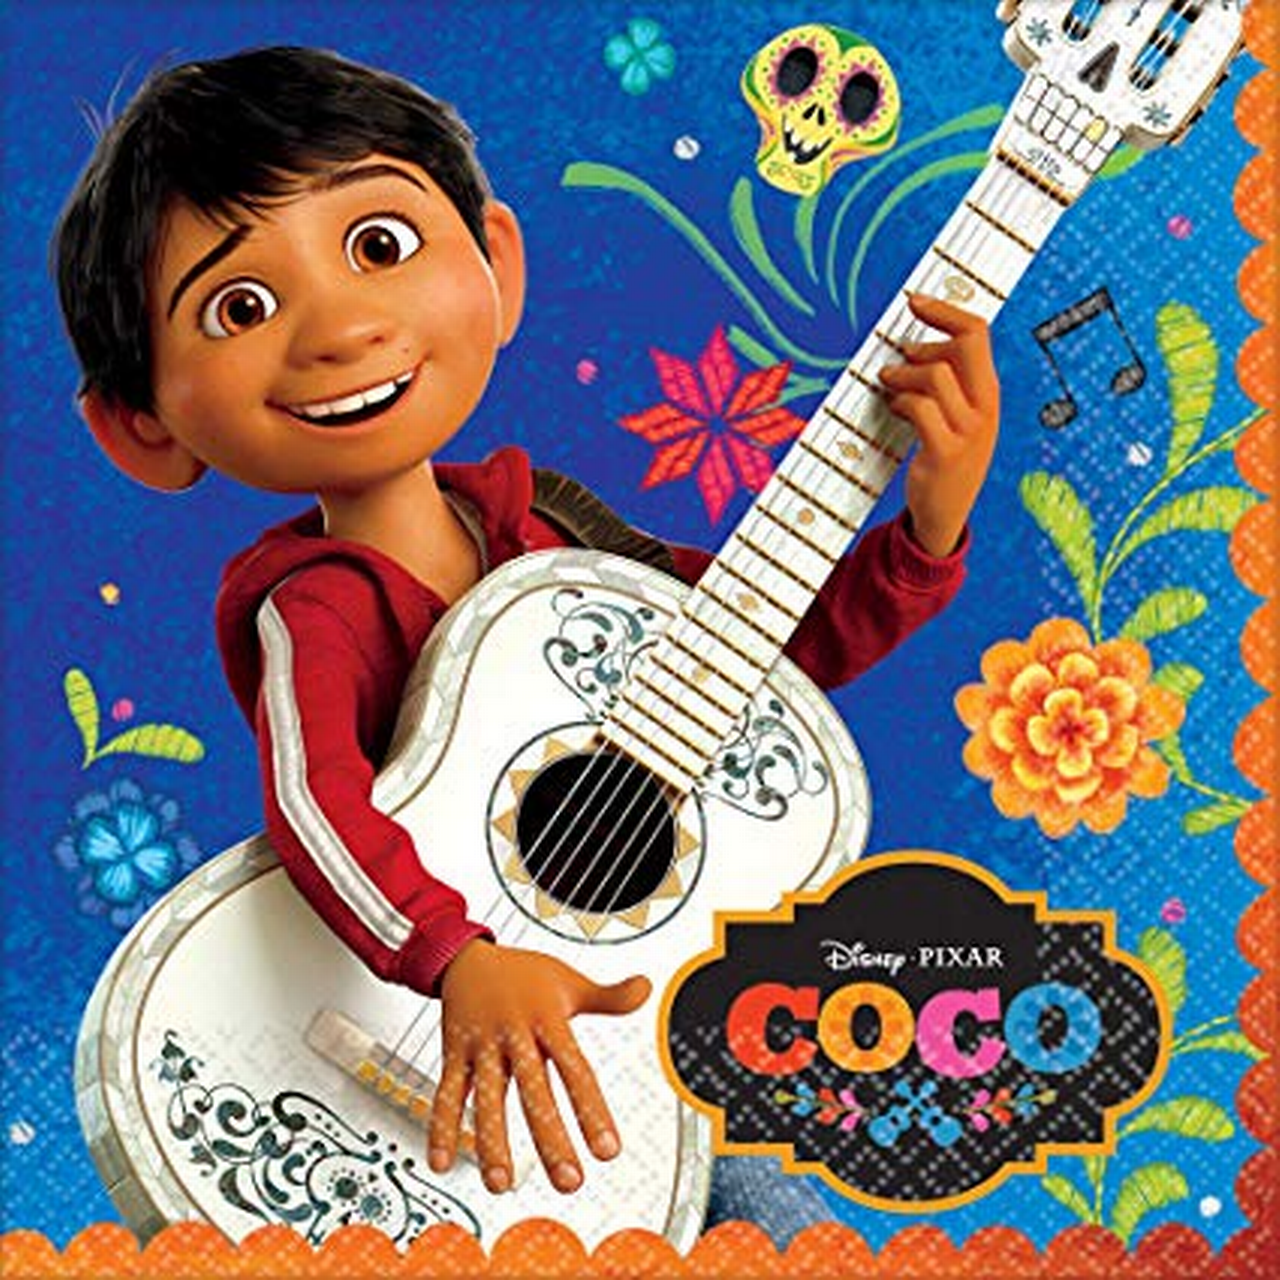 Coco movie guide art